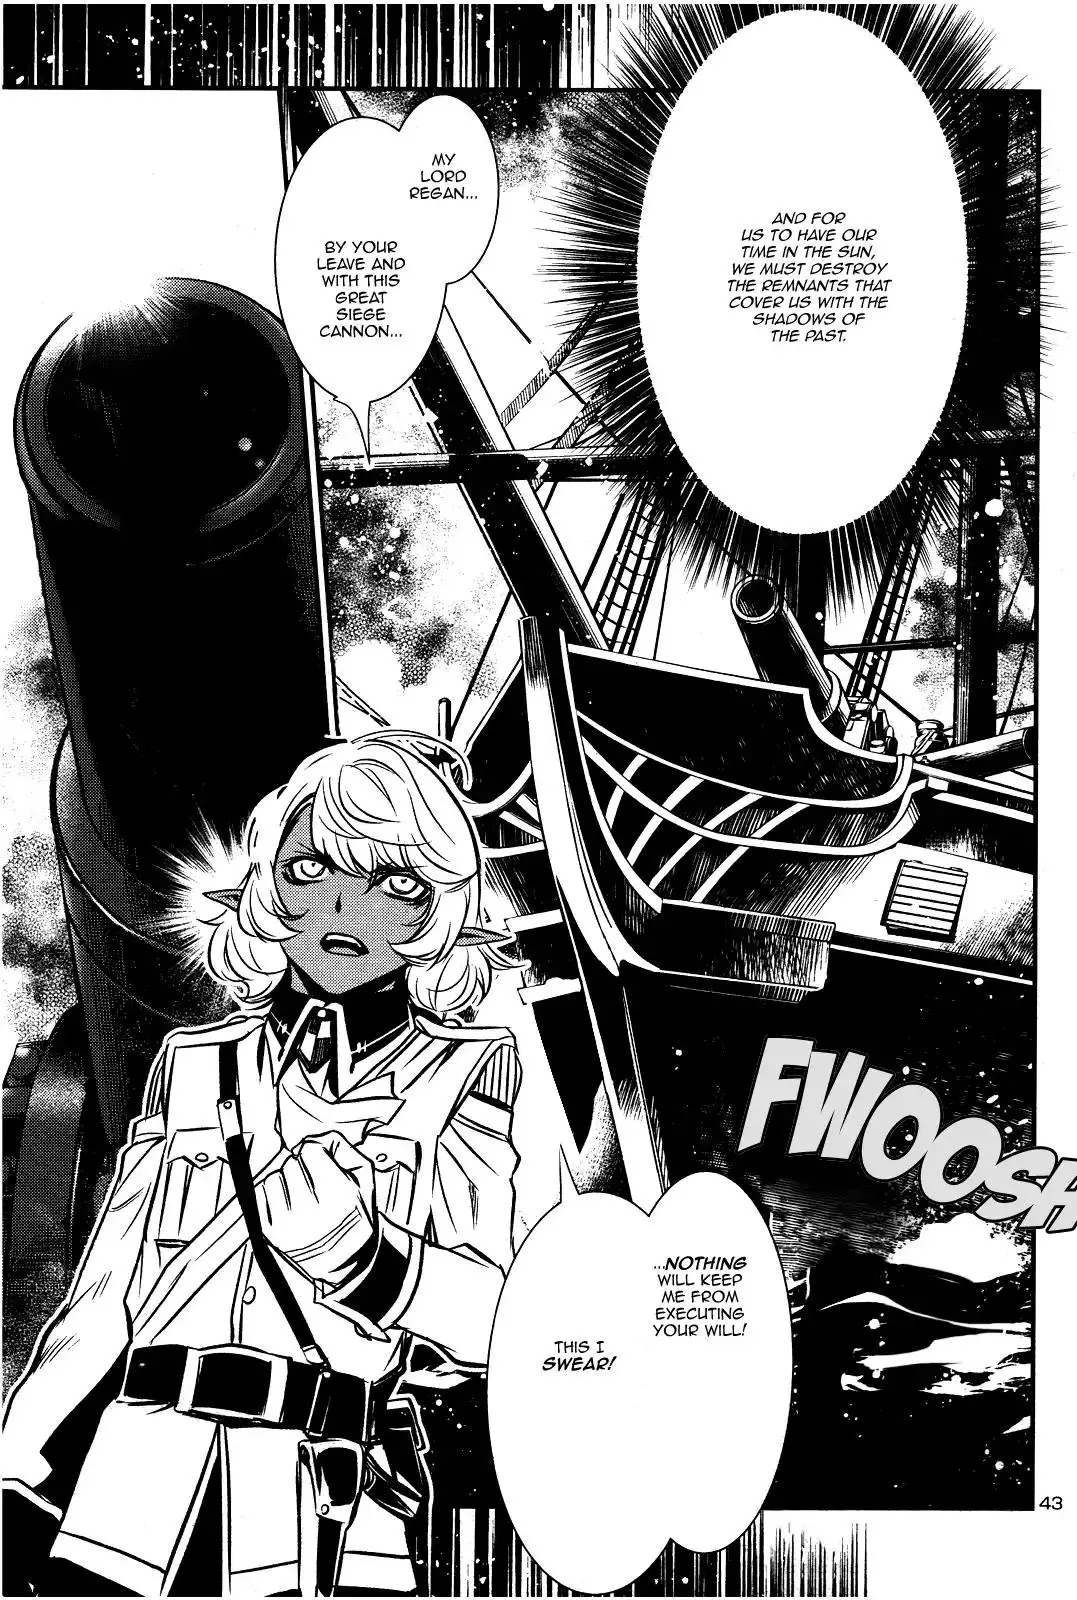 Shinju no Nectar - 17 page 41